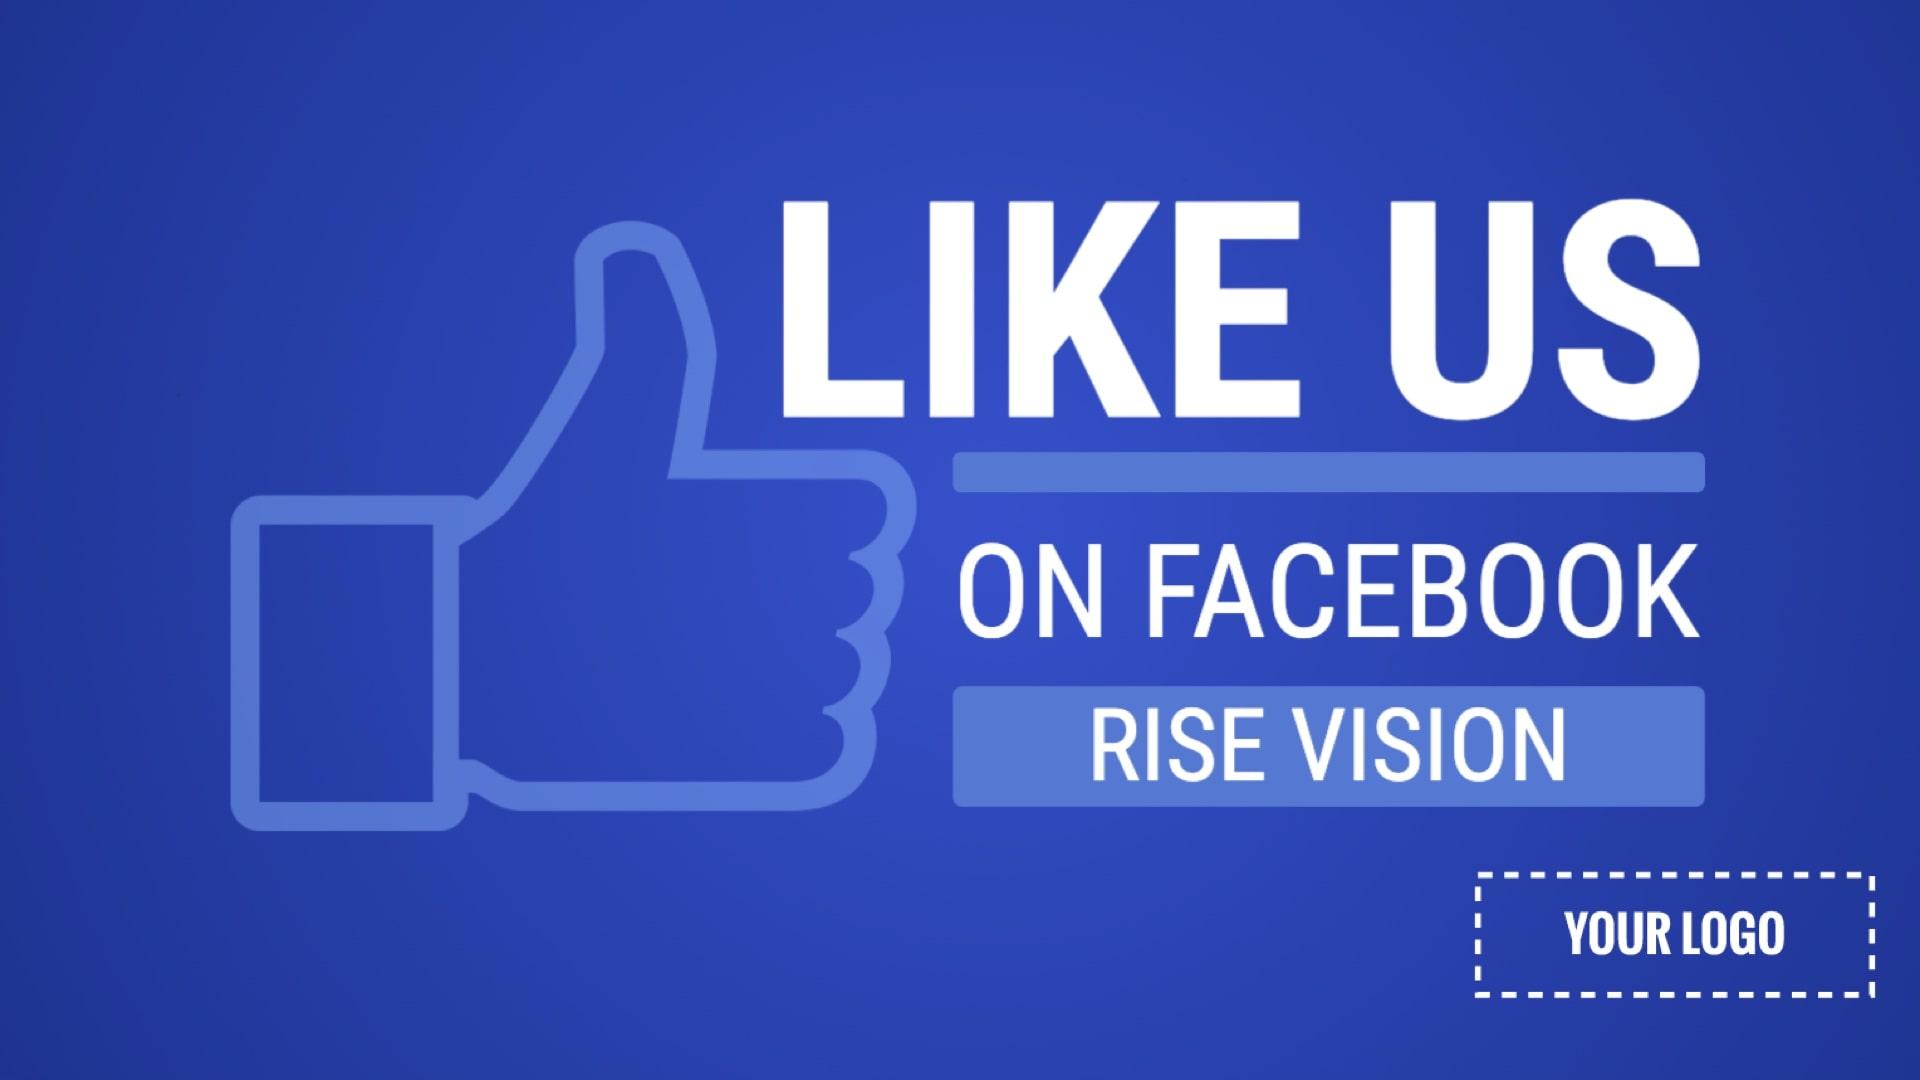 Facebook Promotion Digital Signage Template